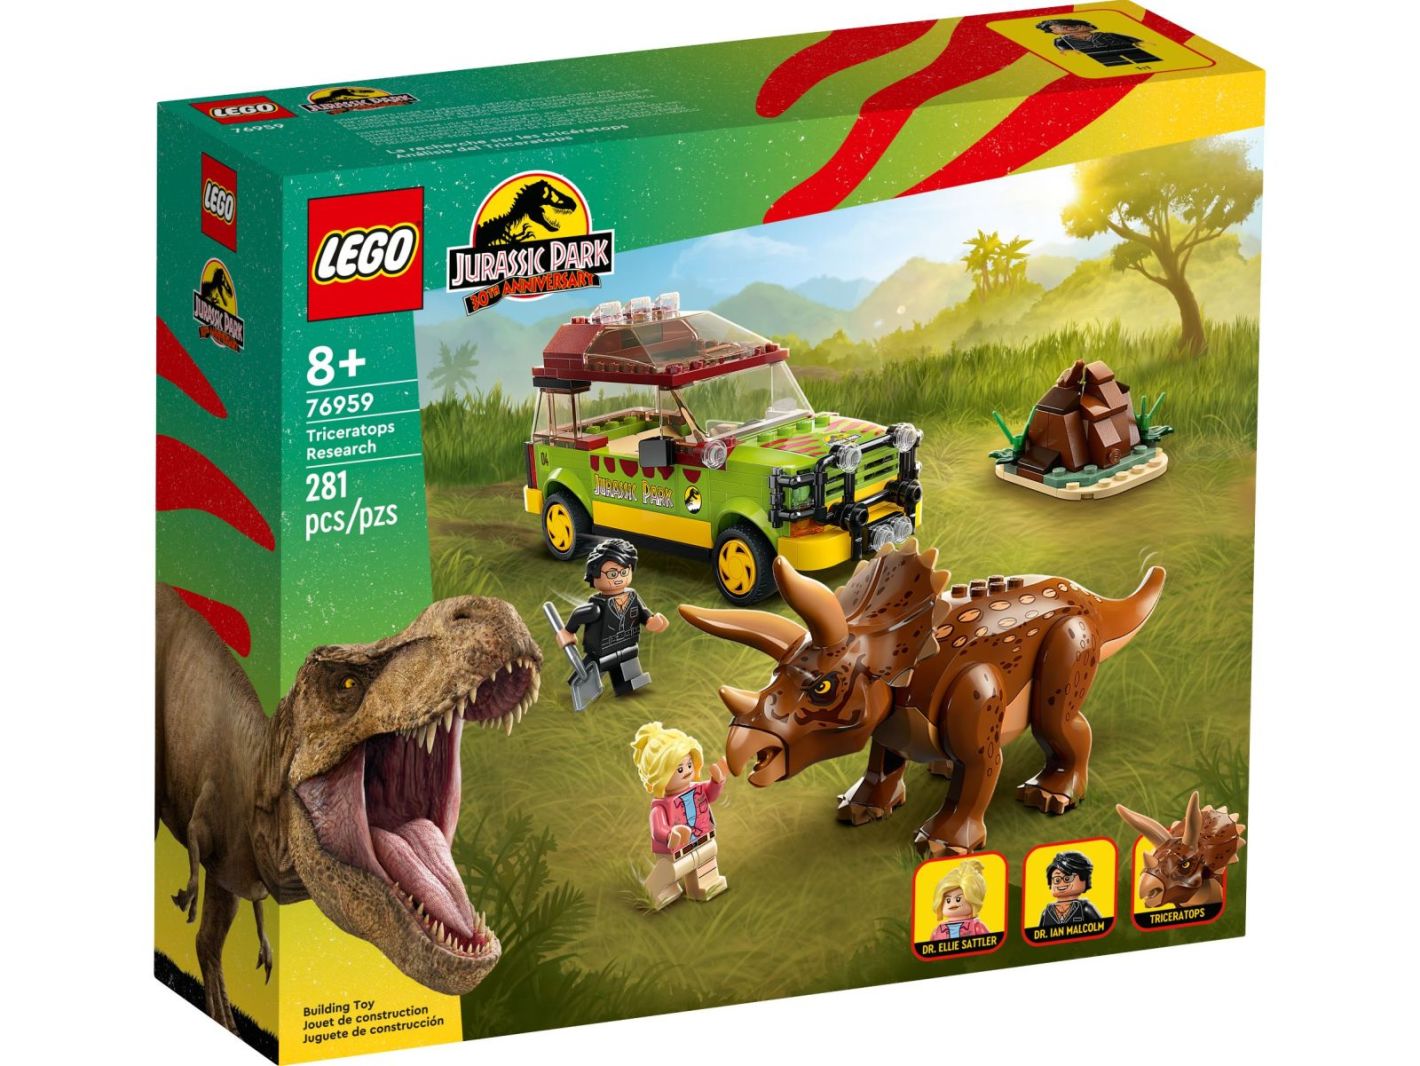 LEGO Jurassic kaufen 76959 World Triceratops-Forschung